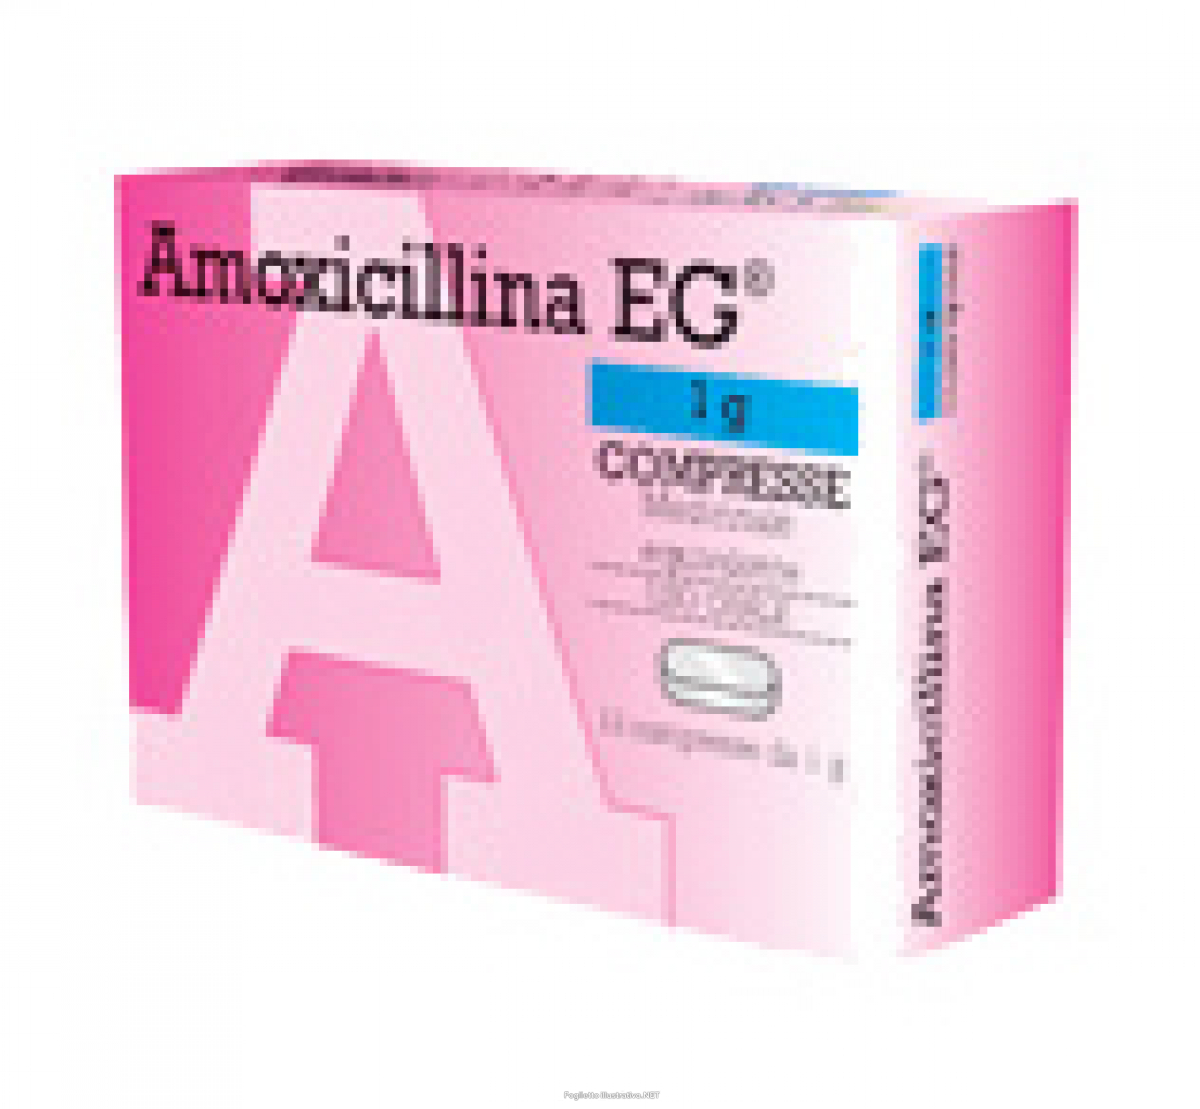 Quanti giorni minimo di amoxicillina?